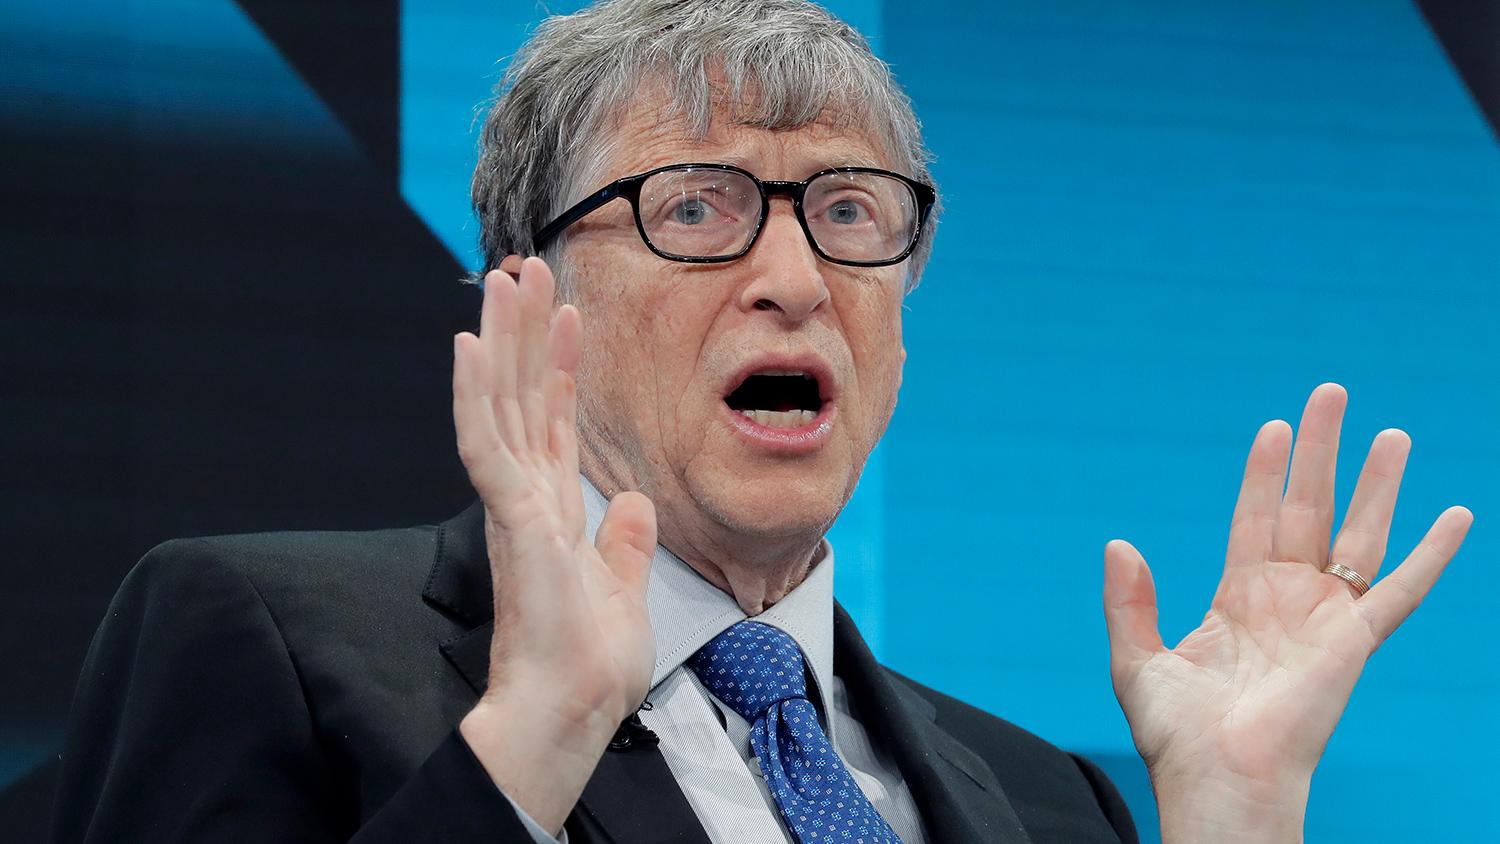 Дико и странно: Билл Гейтс рассказал все о чипировании людей